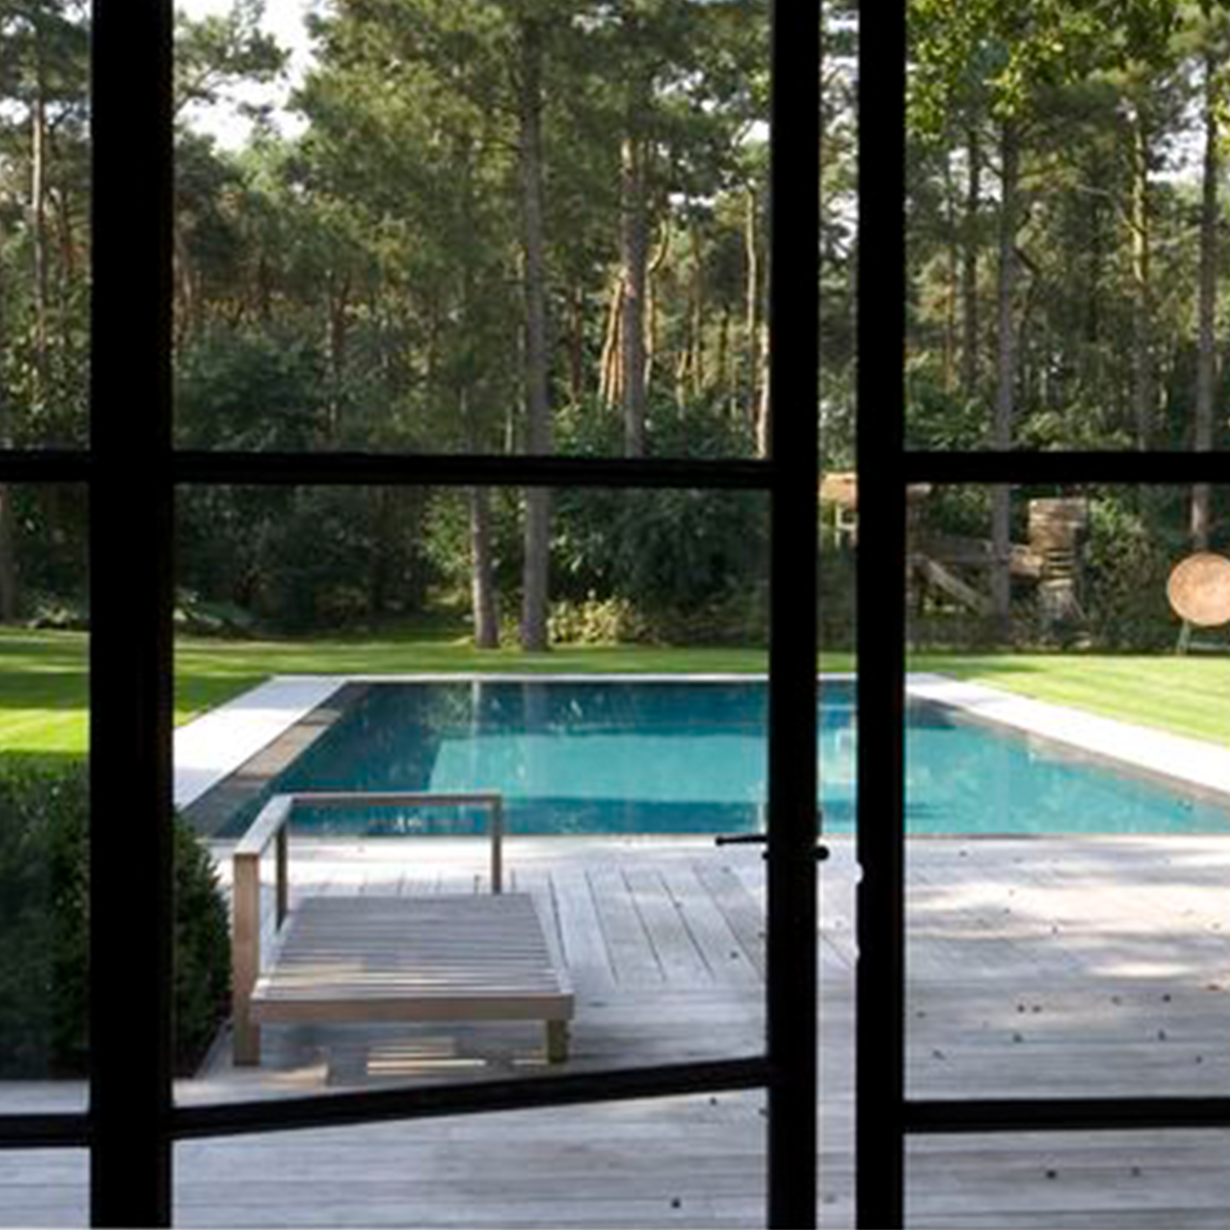 Creëer uw eigen oase van ontspanning met de installatie van een poolhouse bij uw thuis